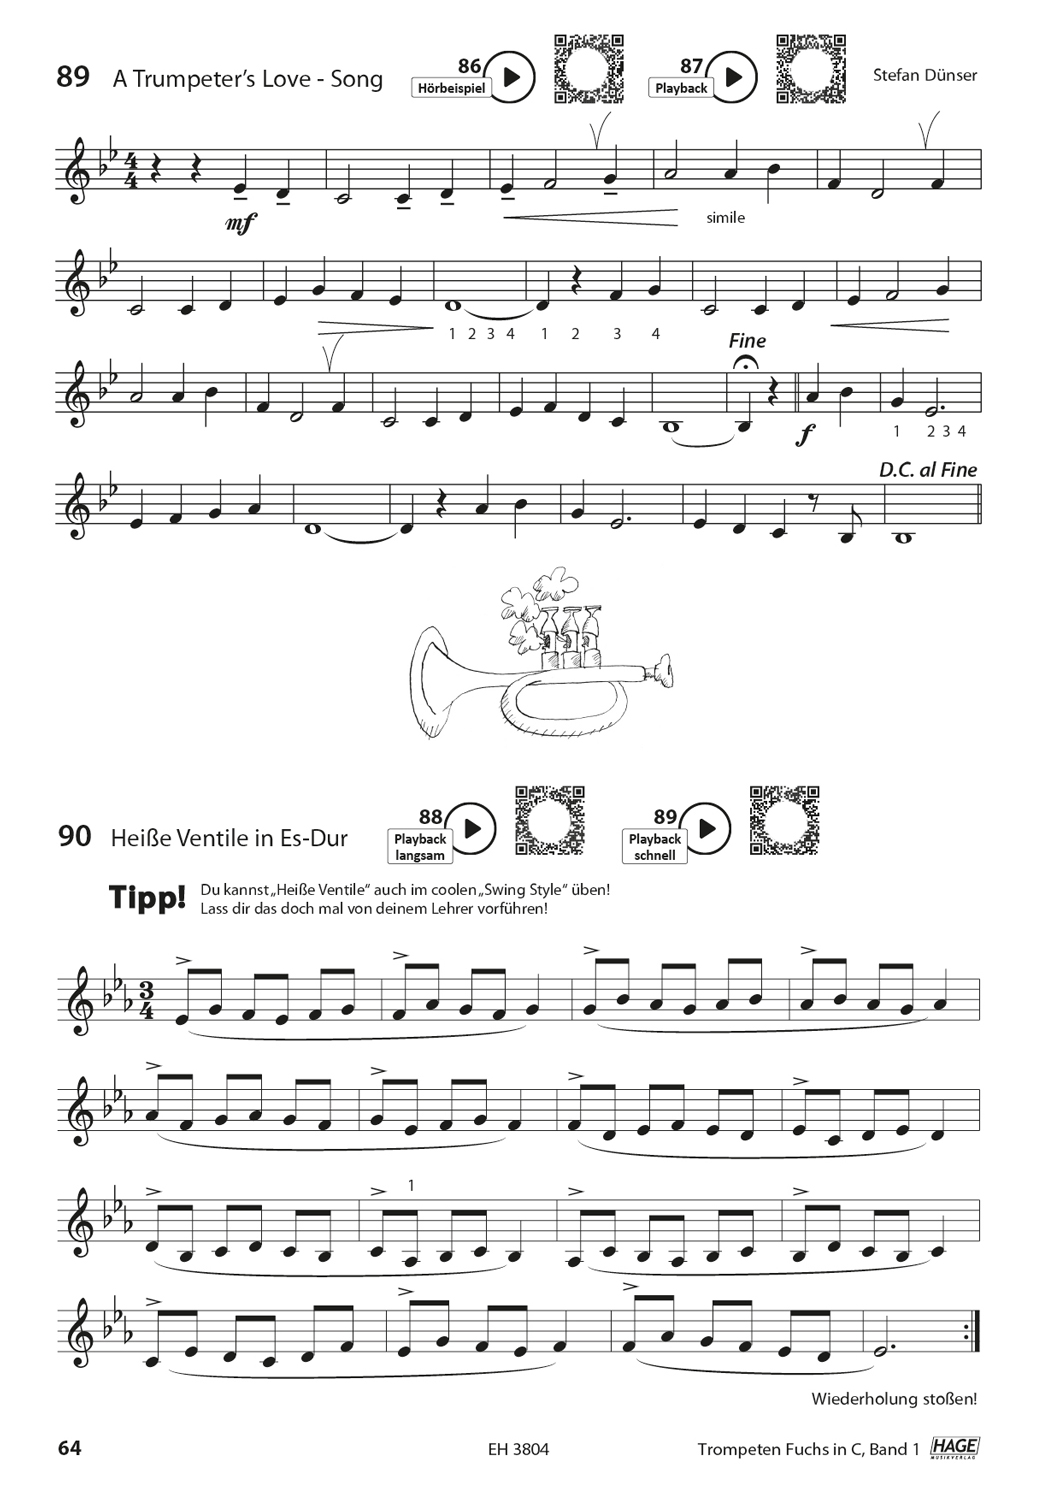 Trompeten Fuchs Band 1 in C für Posaunenchor (mit CD) Seiten 8